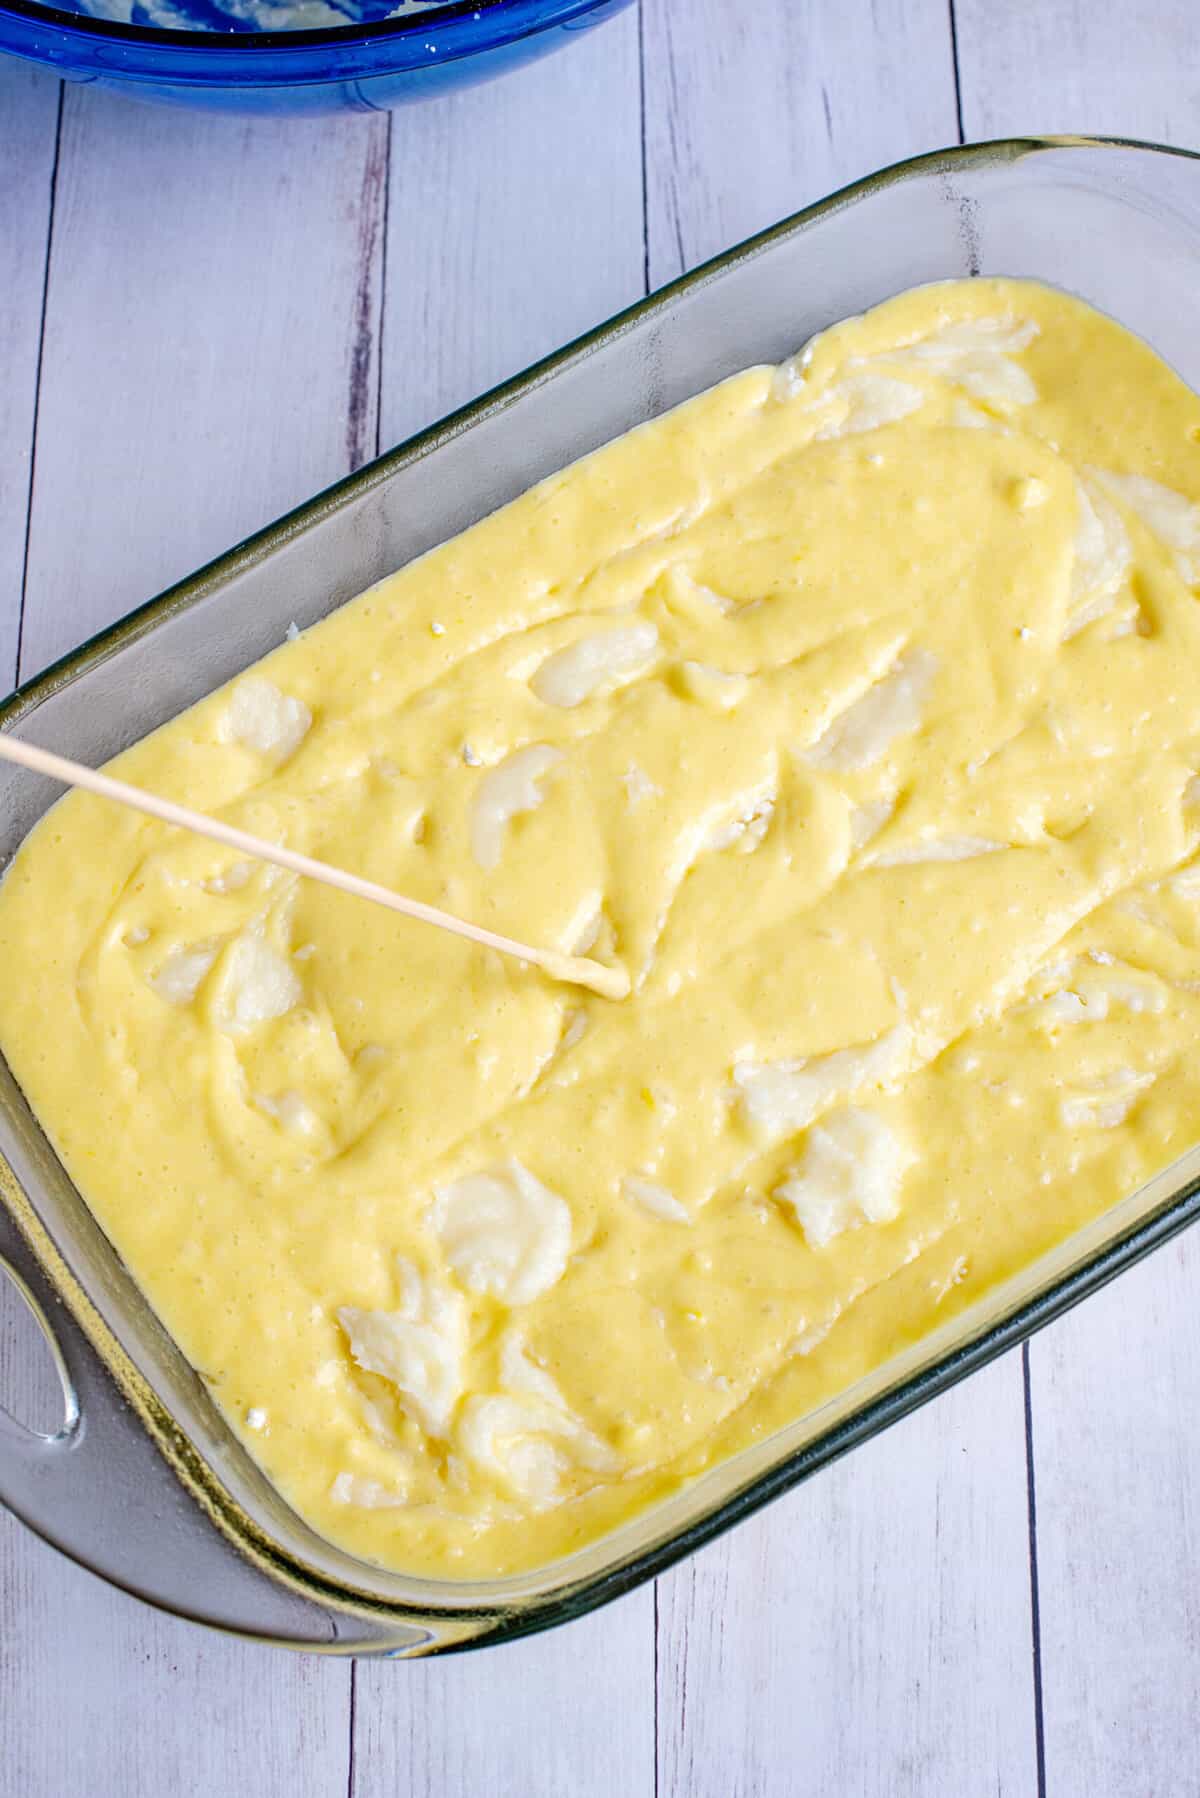 gently swirl cream cheese into lemon earthquake cake